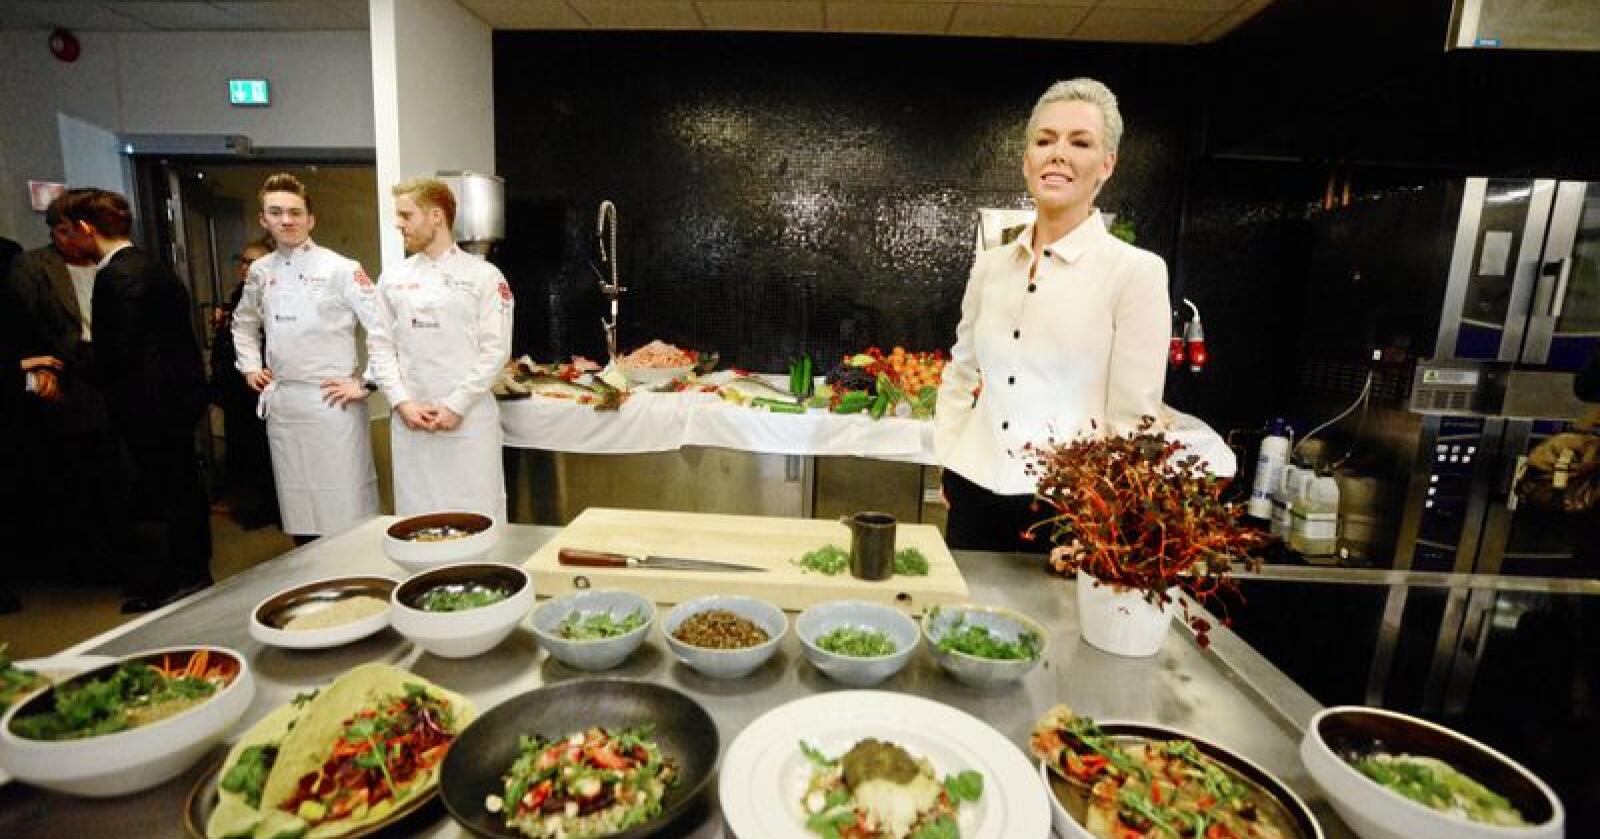 Superkjendis og EAT-gründer Gunhild Stordalen vil få oss til å spise mindre kjøtt. Foto: Siri Juell Rasmussen 